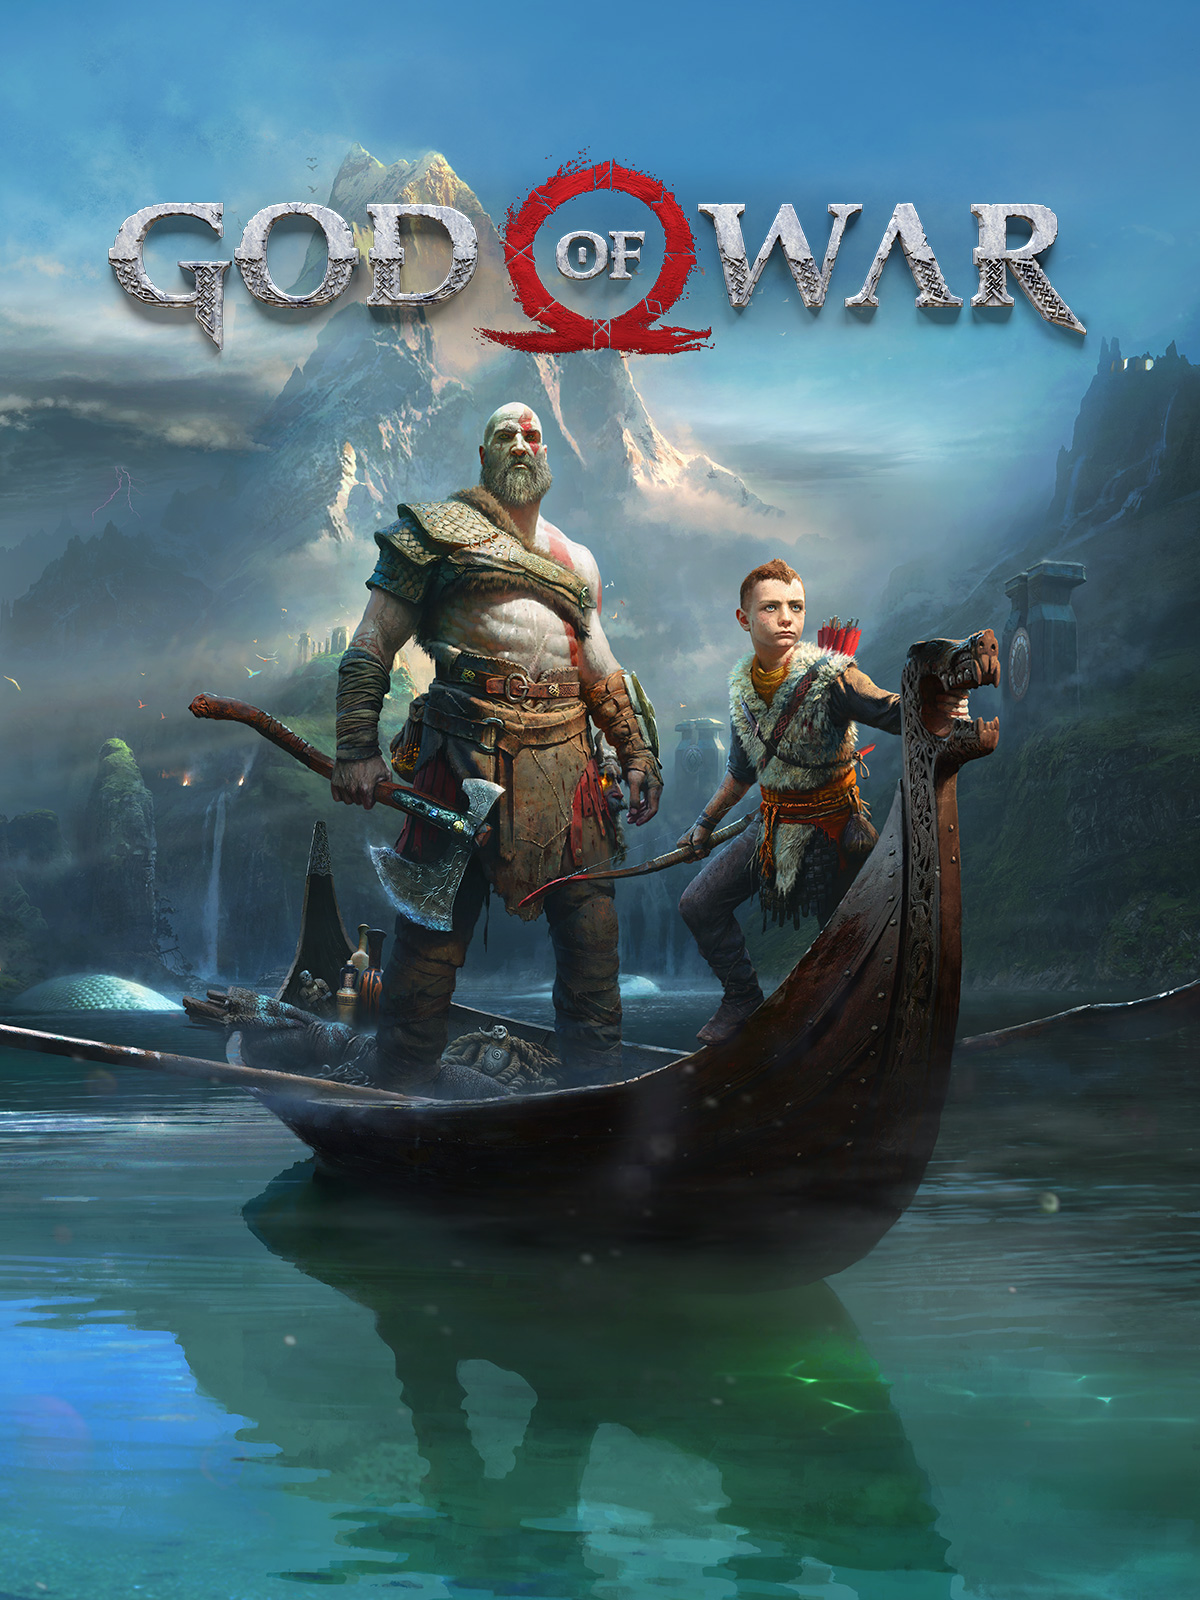 دانلود ترینر بازی God of War